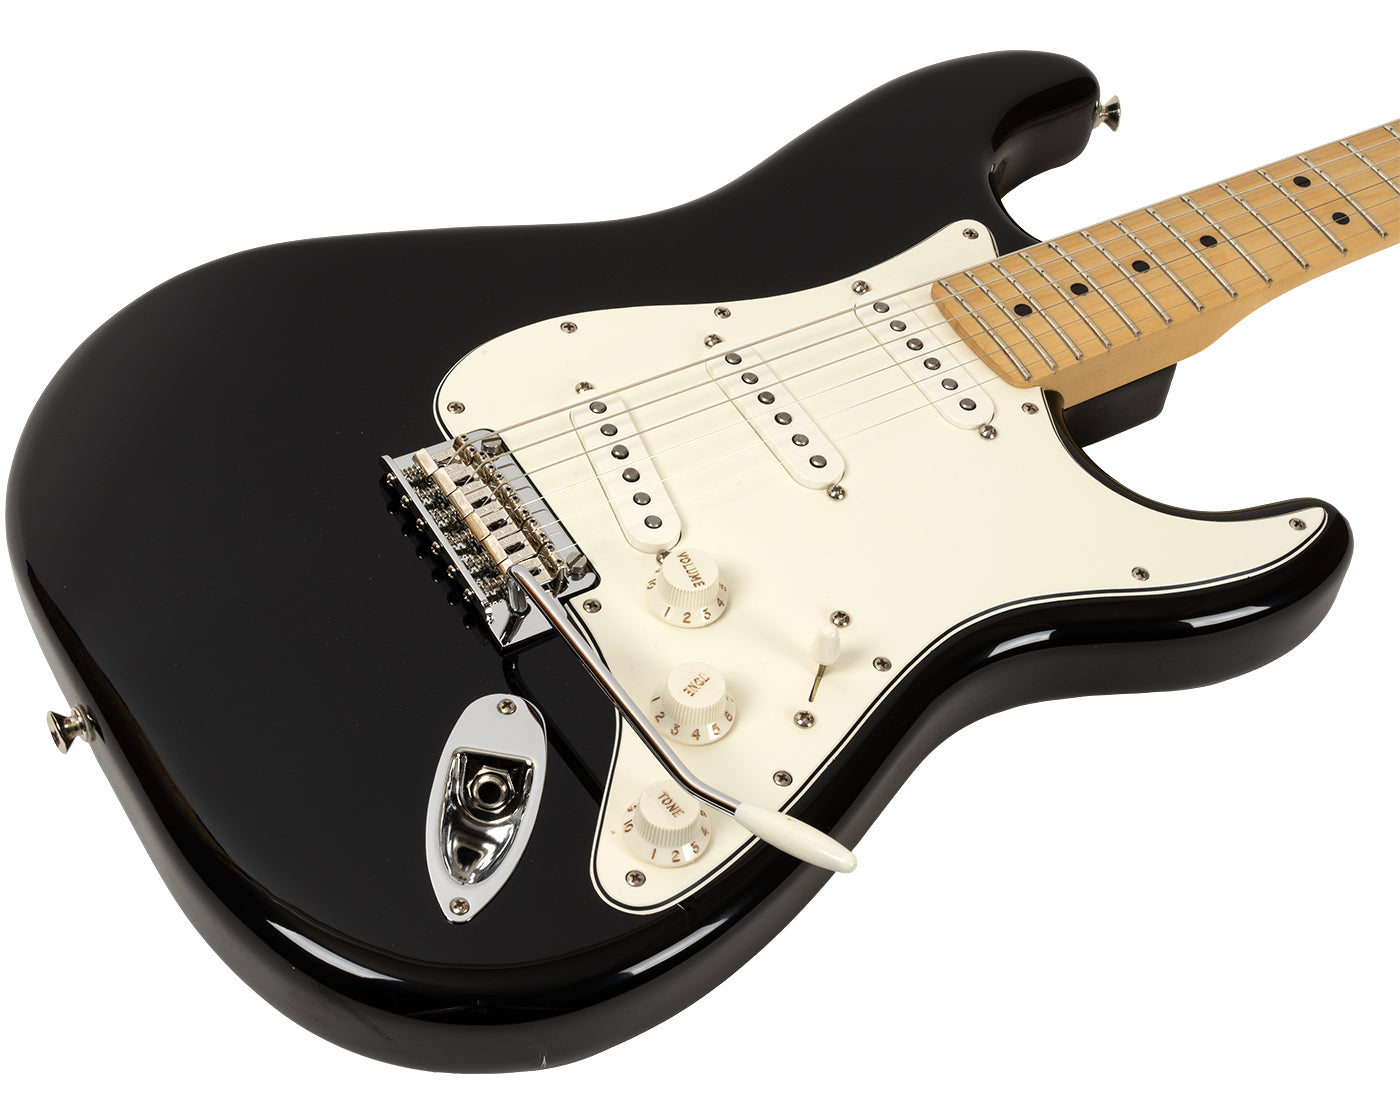 Thunder Road Guitars - New Fender Player Stratocaster Black (PDX)